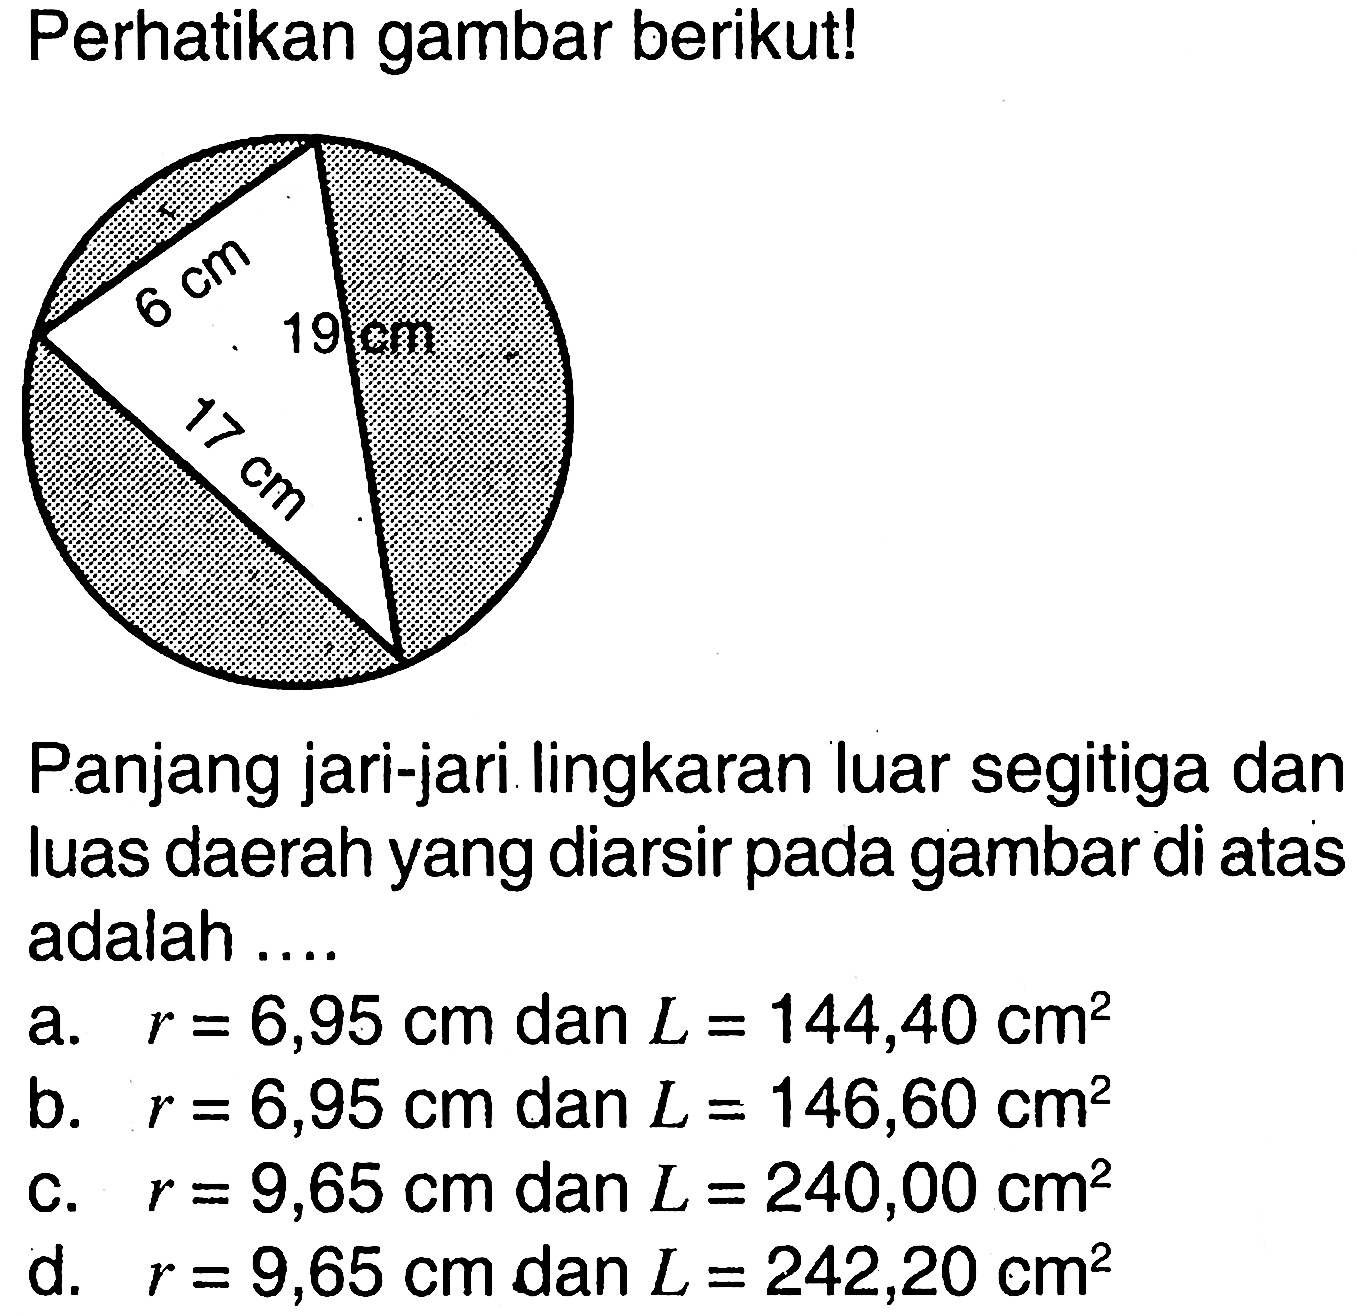 Perhatikan gambar berikut! 6 cm 19 cm 17 cm Panjang jari-jari lingkaran luar segitiga dan luas daerah yang diarsir pada gambar di atas adalah .... a. r=6,95 cm dan L=144,40 cm^2 b. r=6,95 cm dan L=146,60 cm^2 c. r=9,65 cm dan L=240,00 cm^2 d. r=9,65 cm dan L=242,20 cm^2